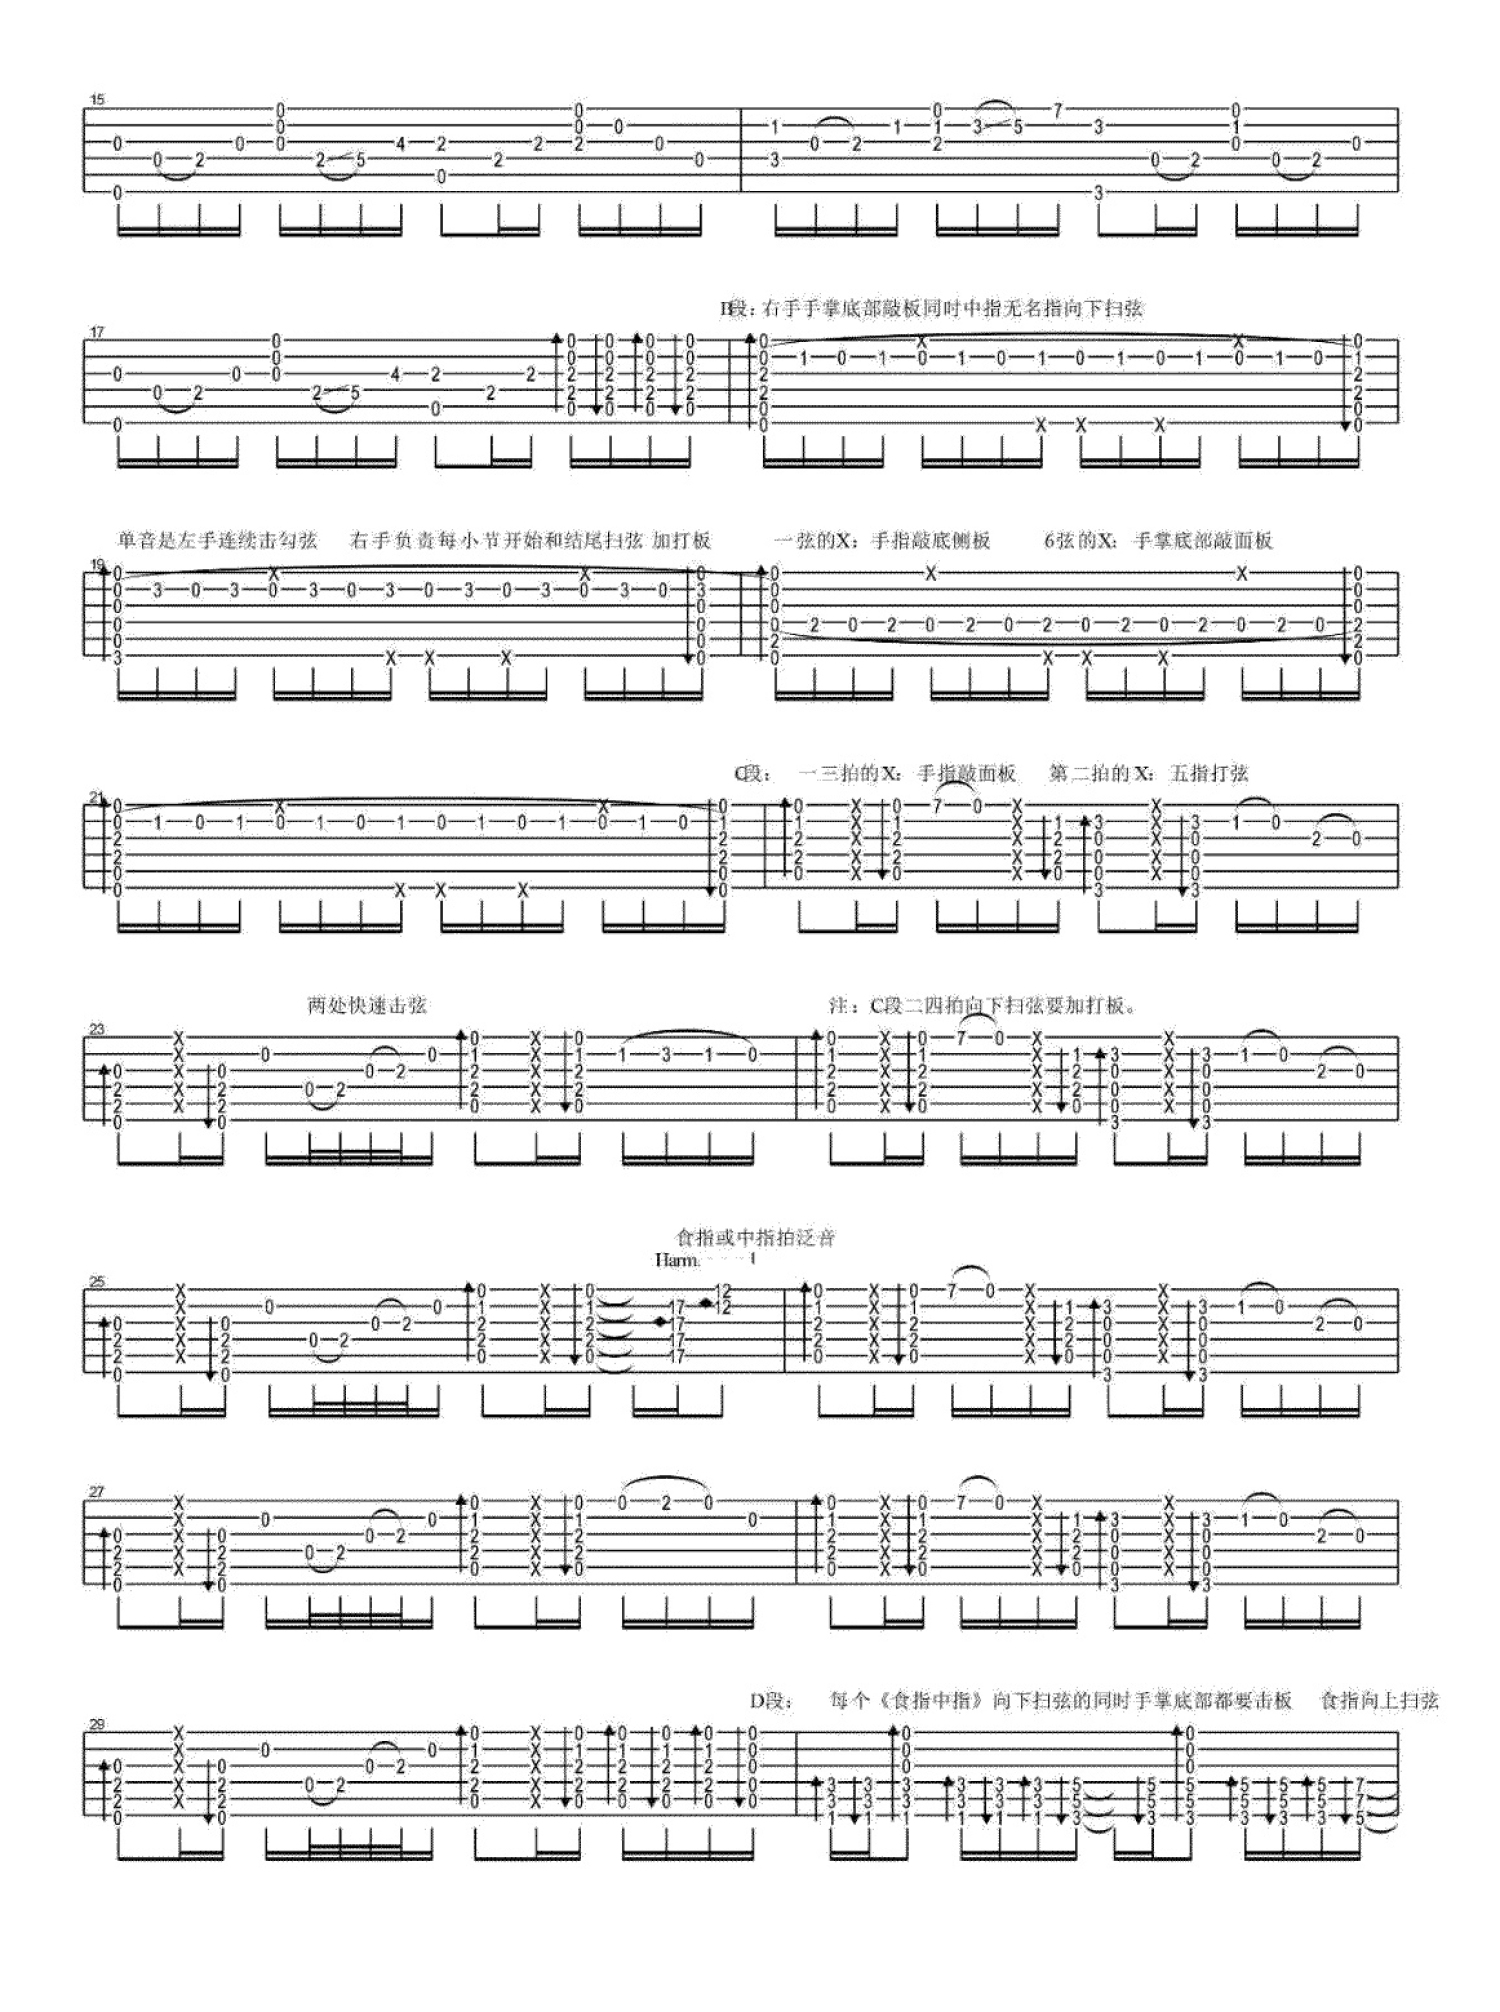 无题-木吉他指弹曲中国指弹演奏家陈亮代表作无题 - 曲谱网